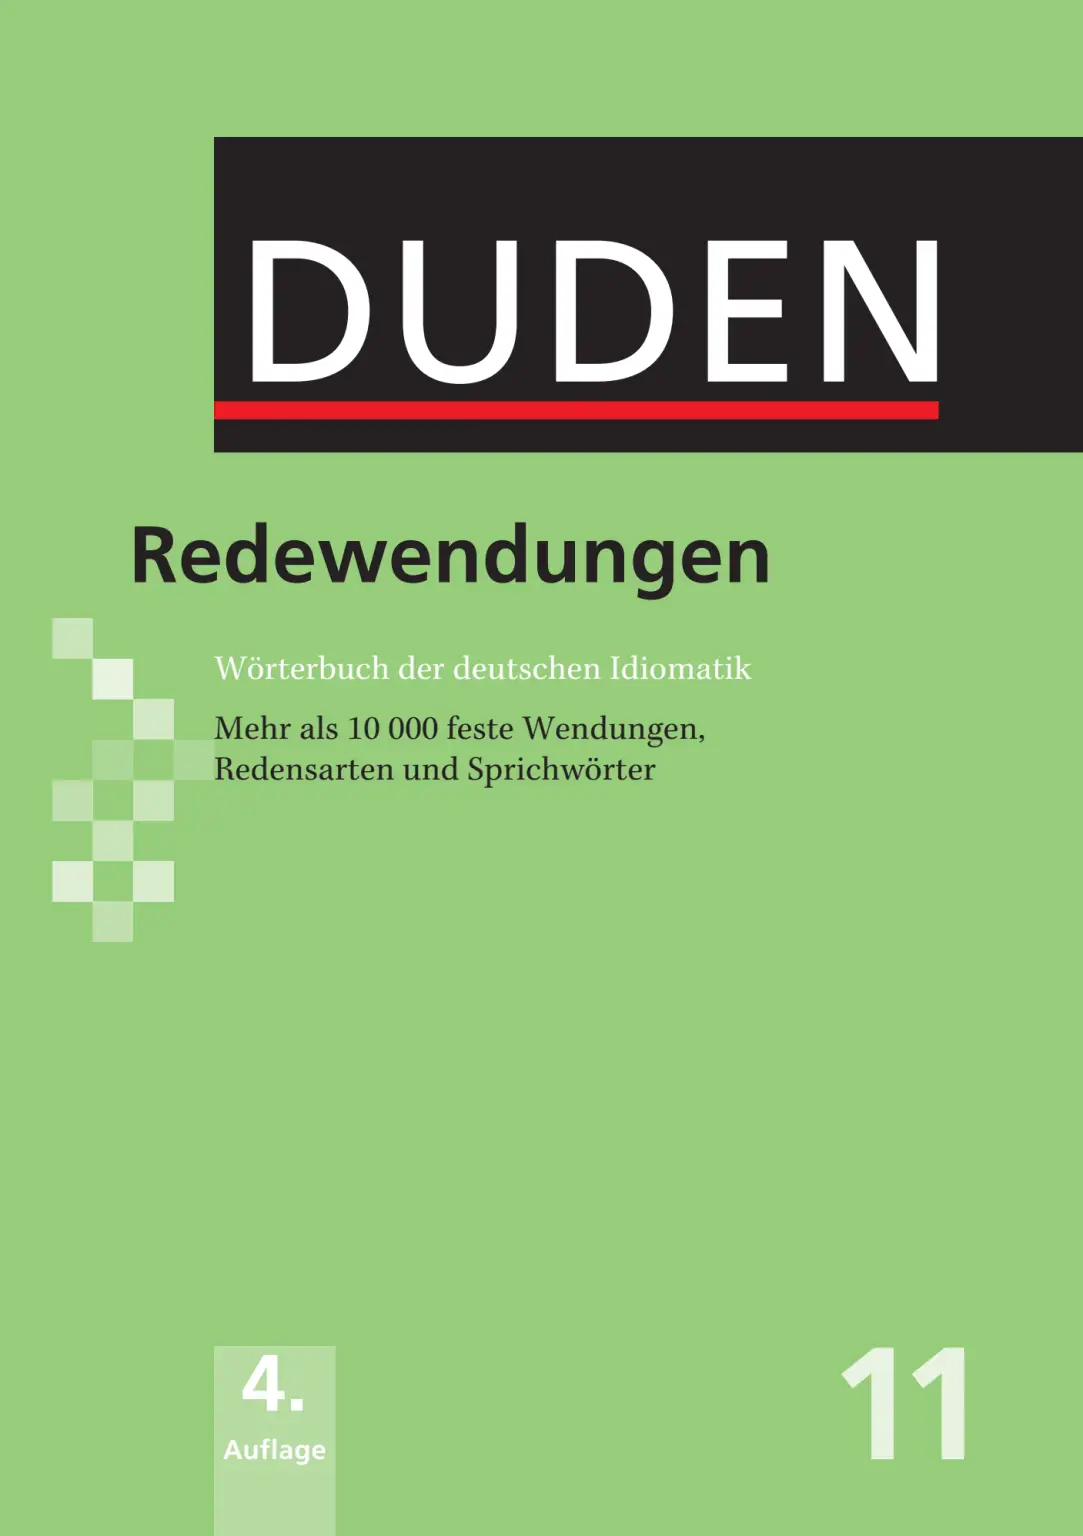 Rich Results on Google's SERP when searching for ''Duden-Redewendungen-Worterbuch-Der-Deutschen-Idiomatik''